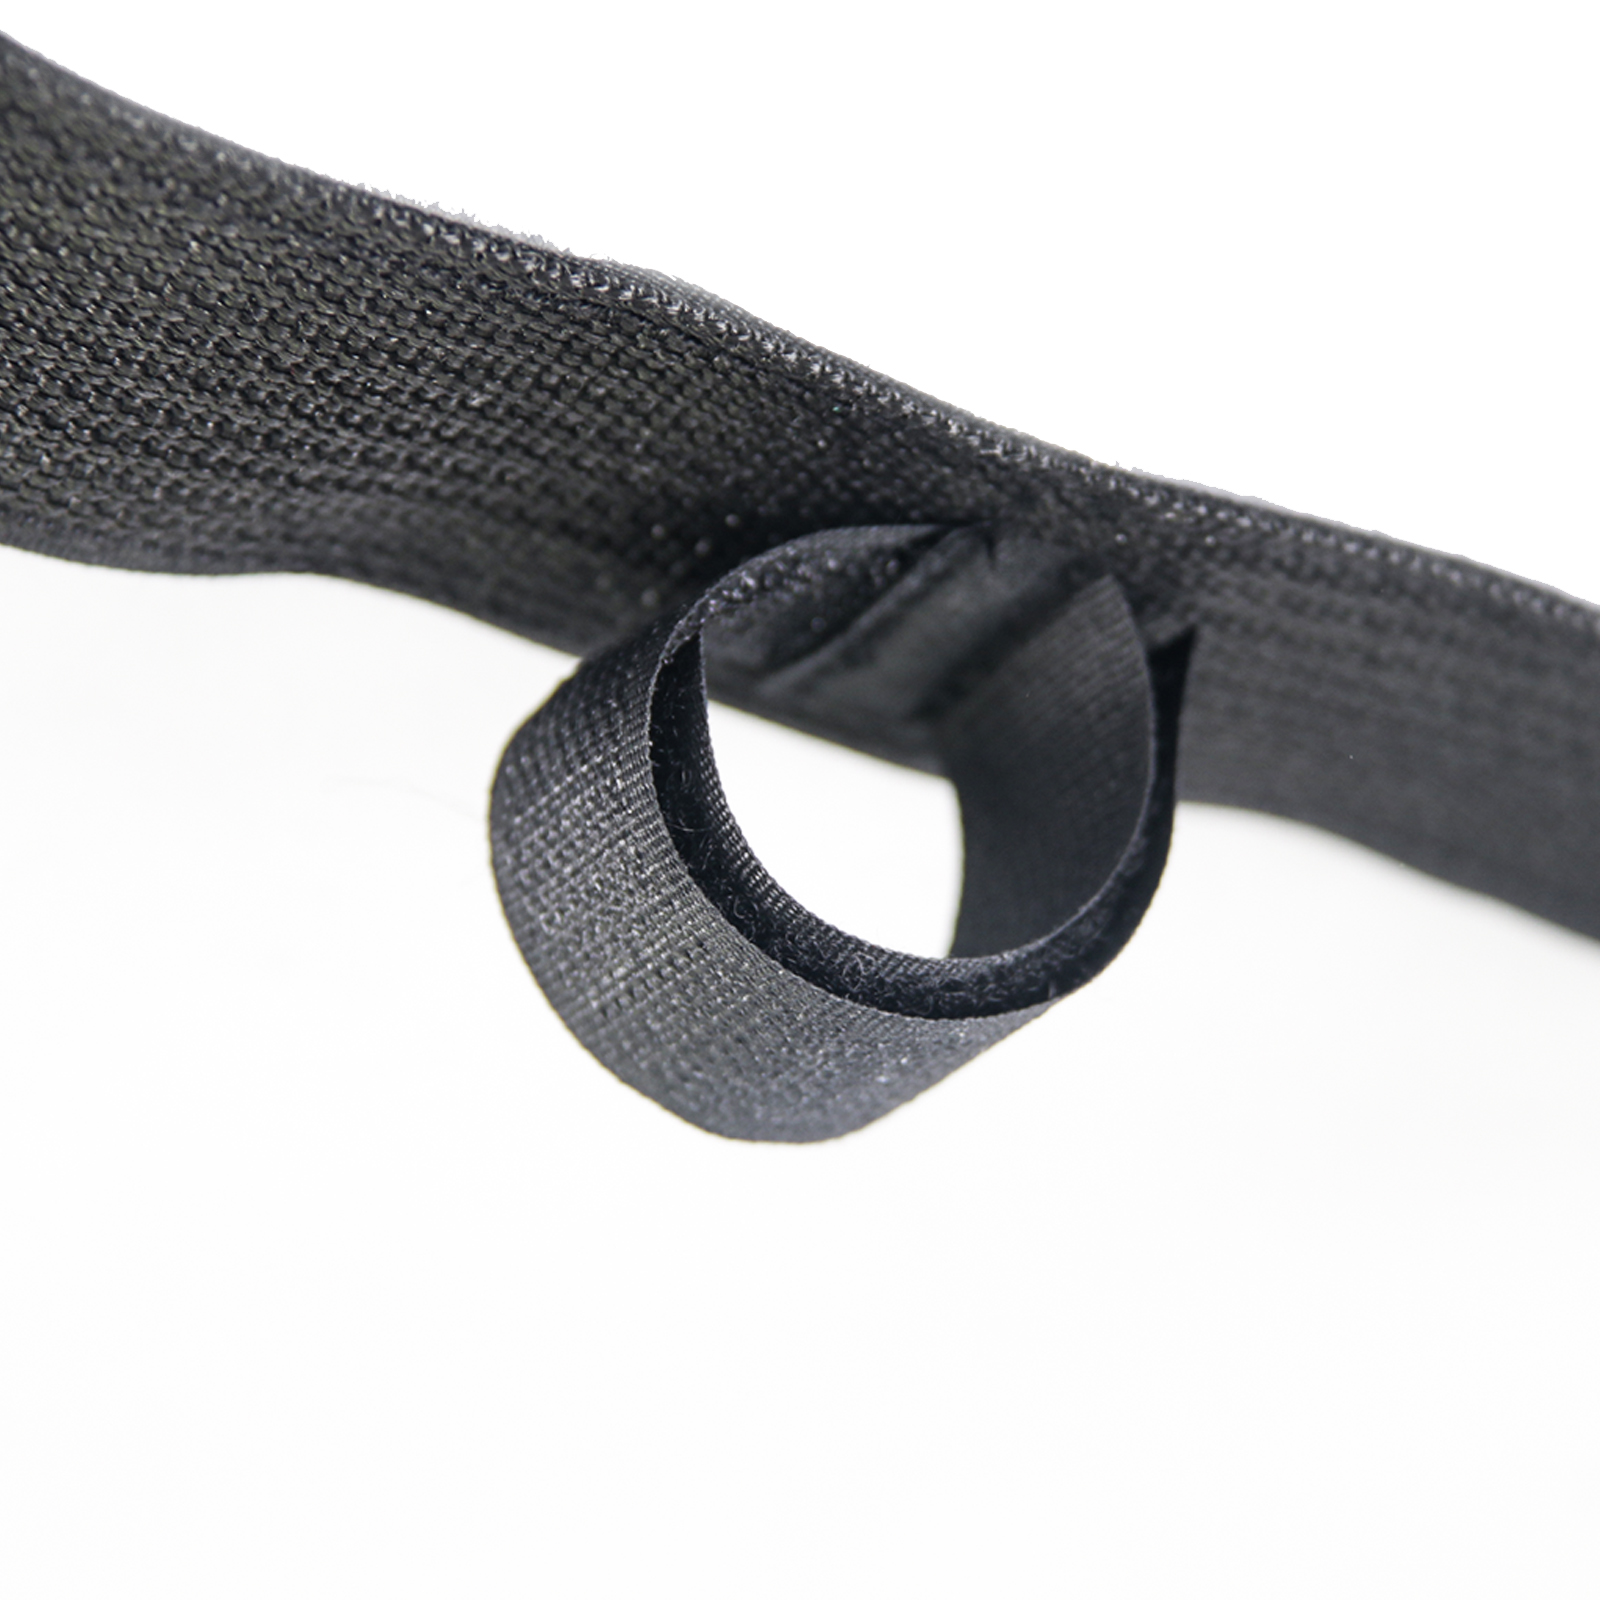 Rod holder belt strap 